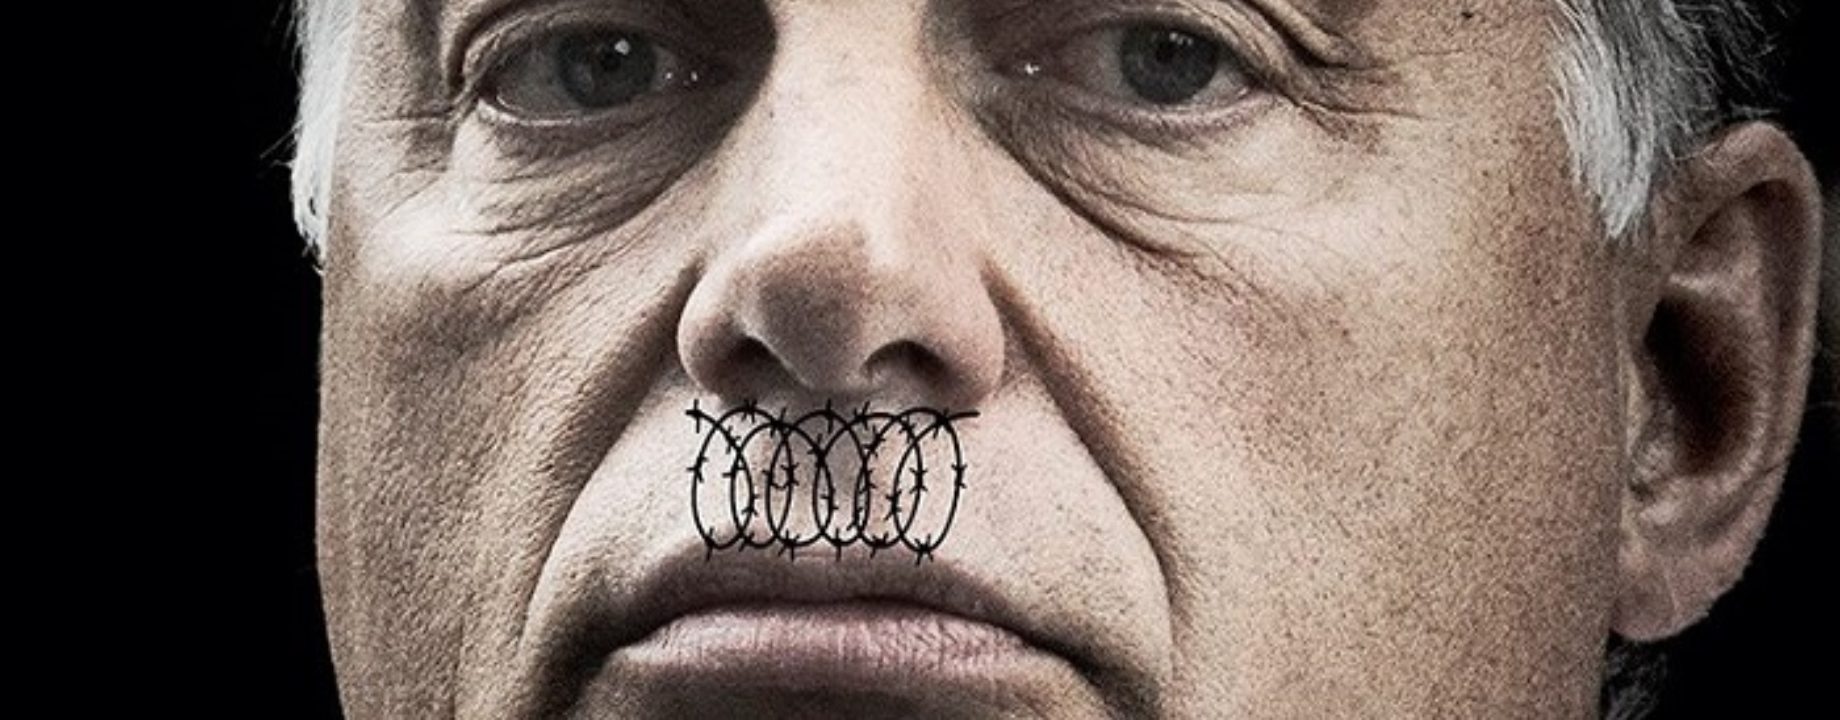 Orban hitler bajusz kerites